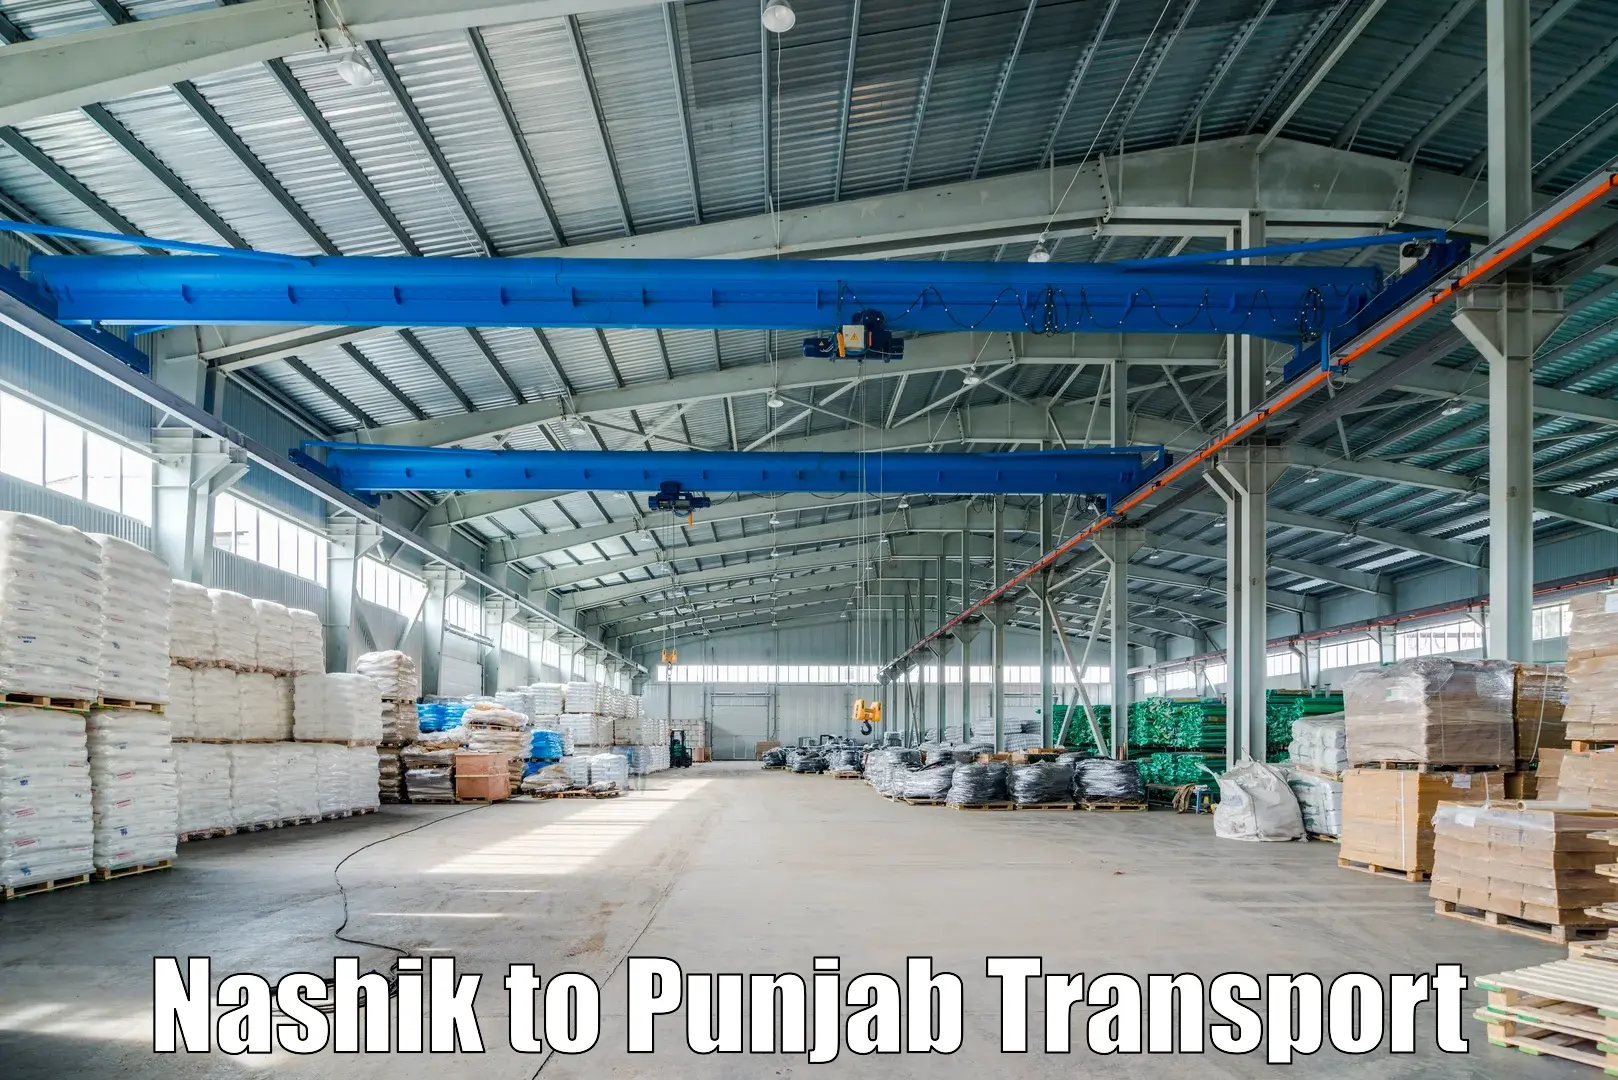 Online transport service Nashik to Punjab